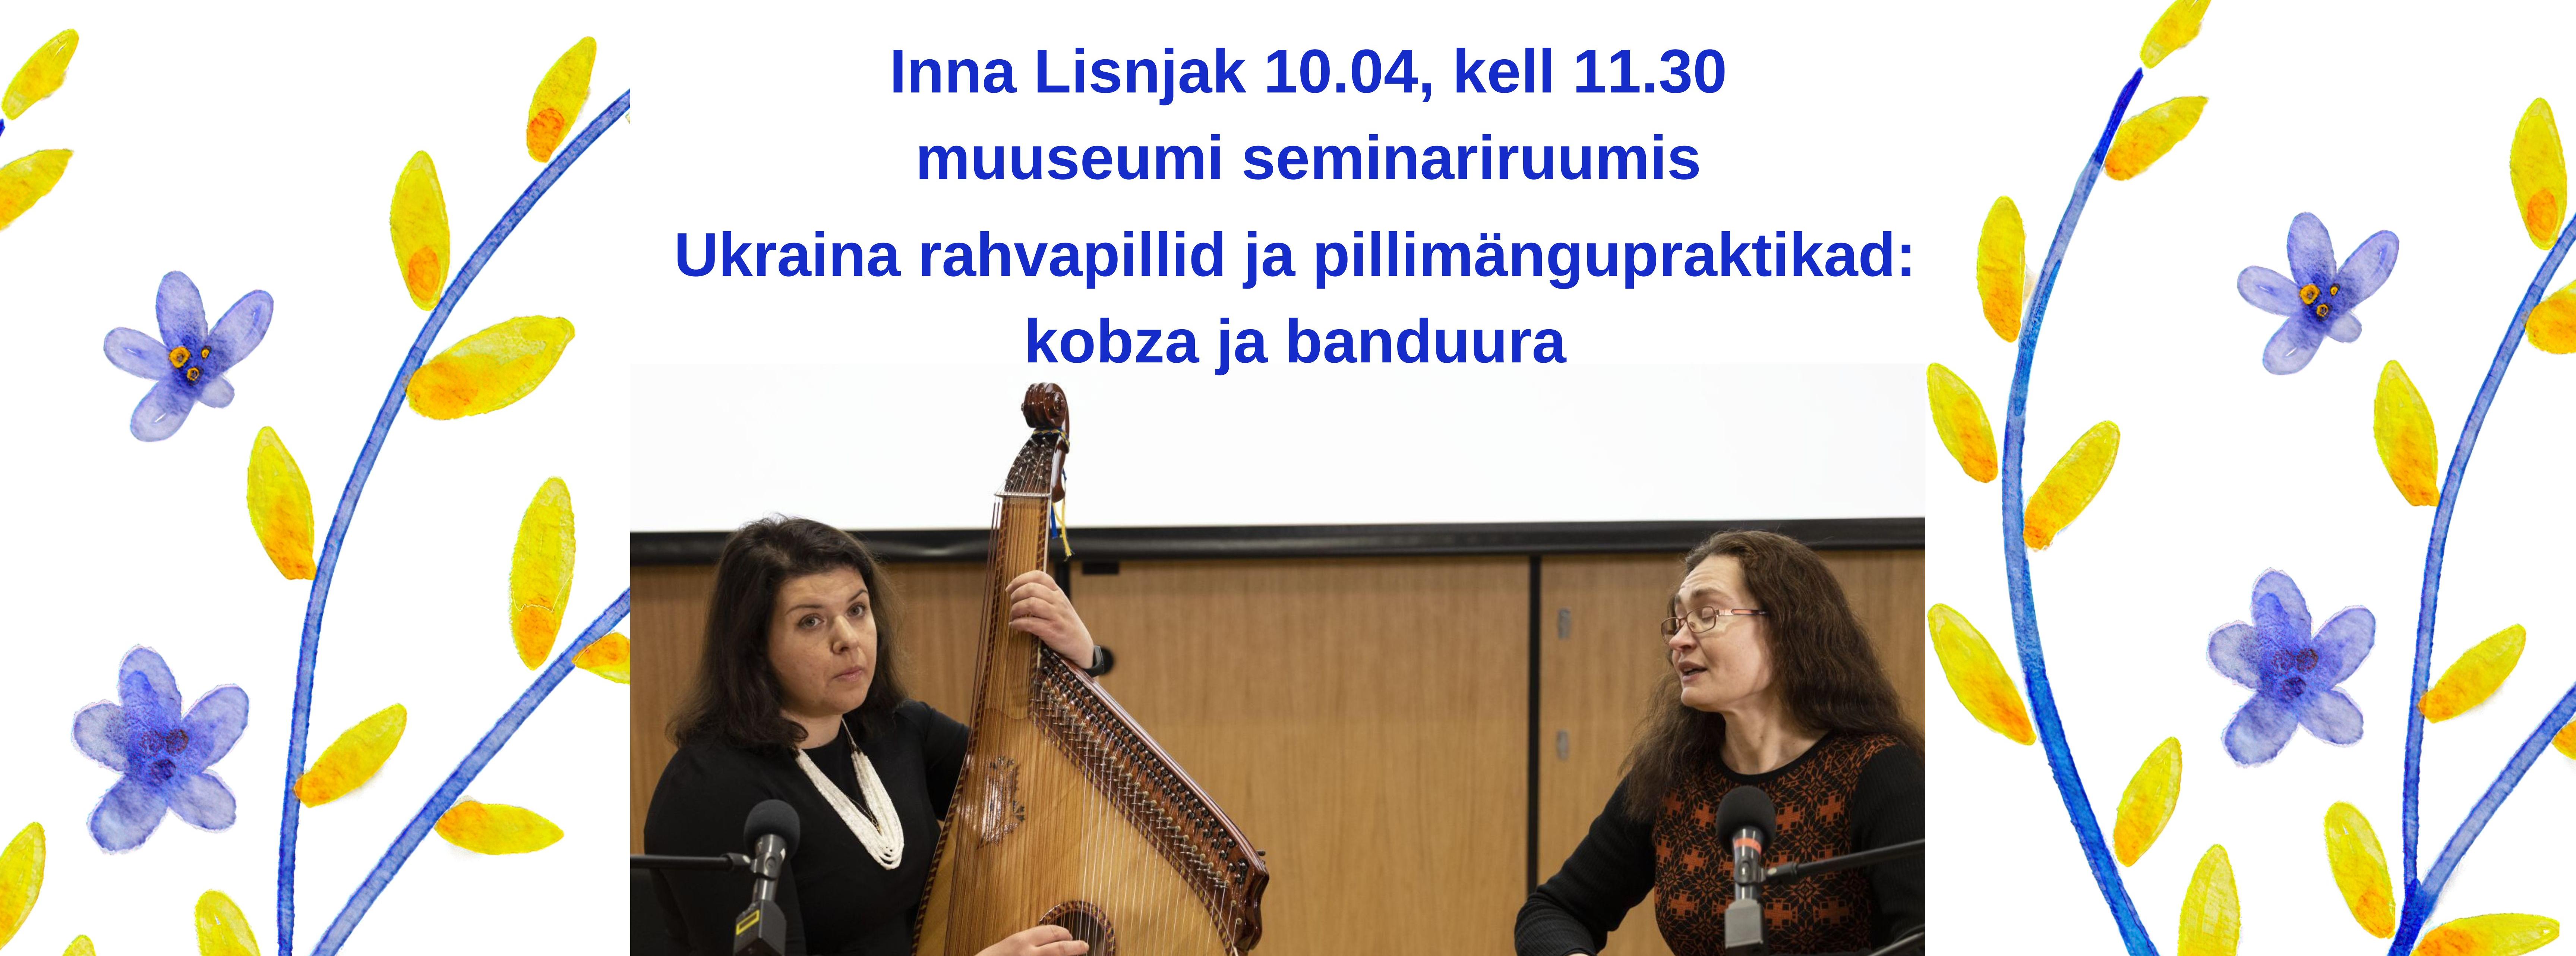 Inna Lisnjak ja Helen Kõmmus rahvapillidega musitseerimas